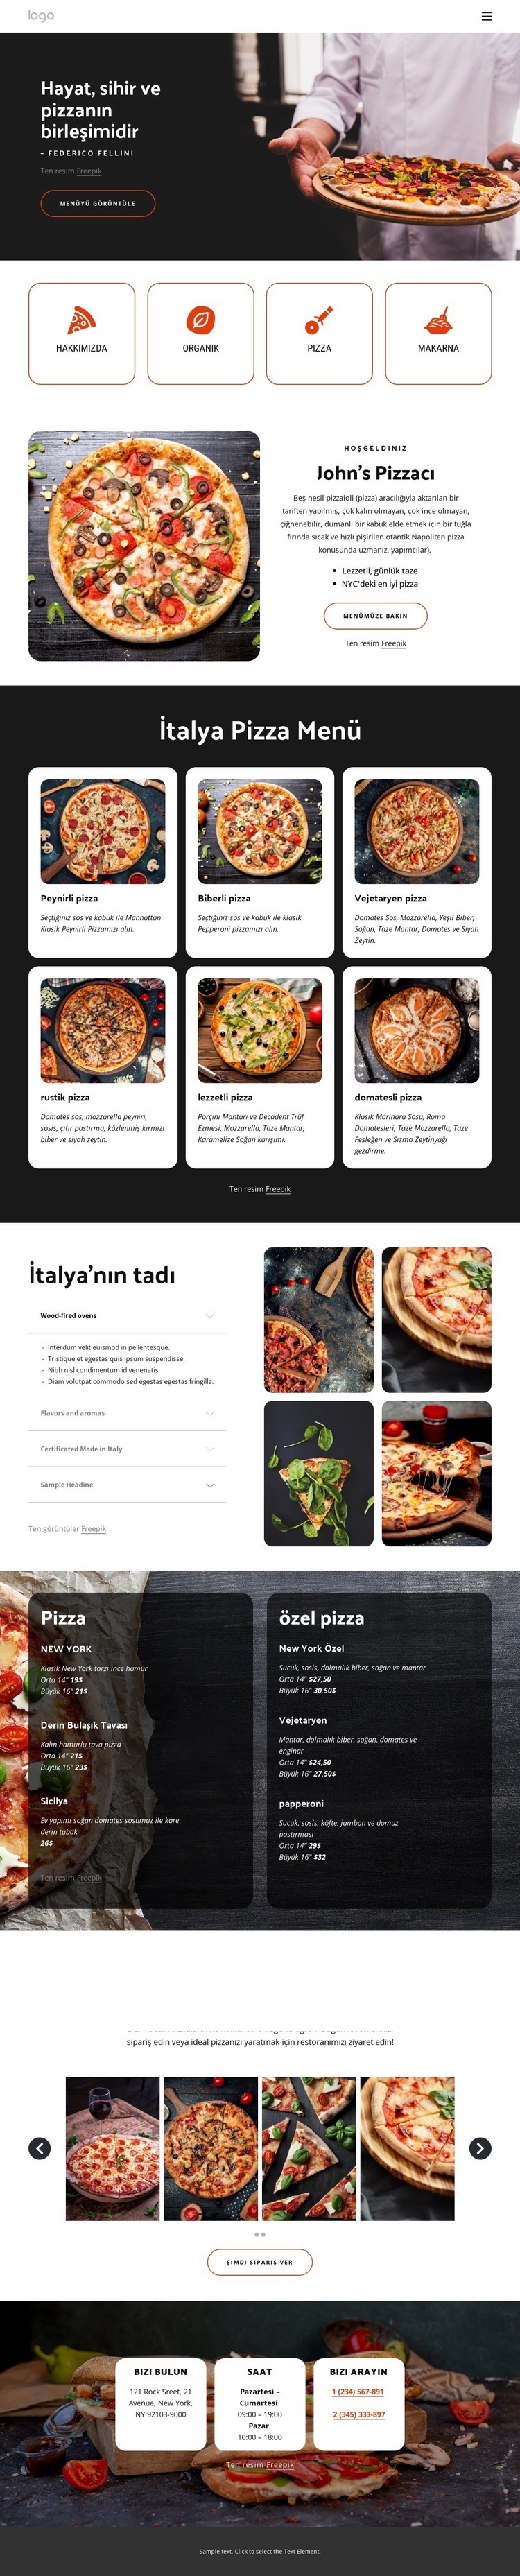 Aile dostu pizza restoranı Web sitesi tasarımı